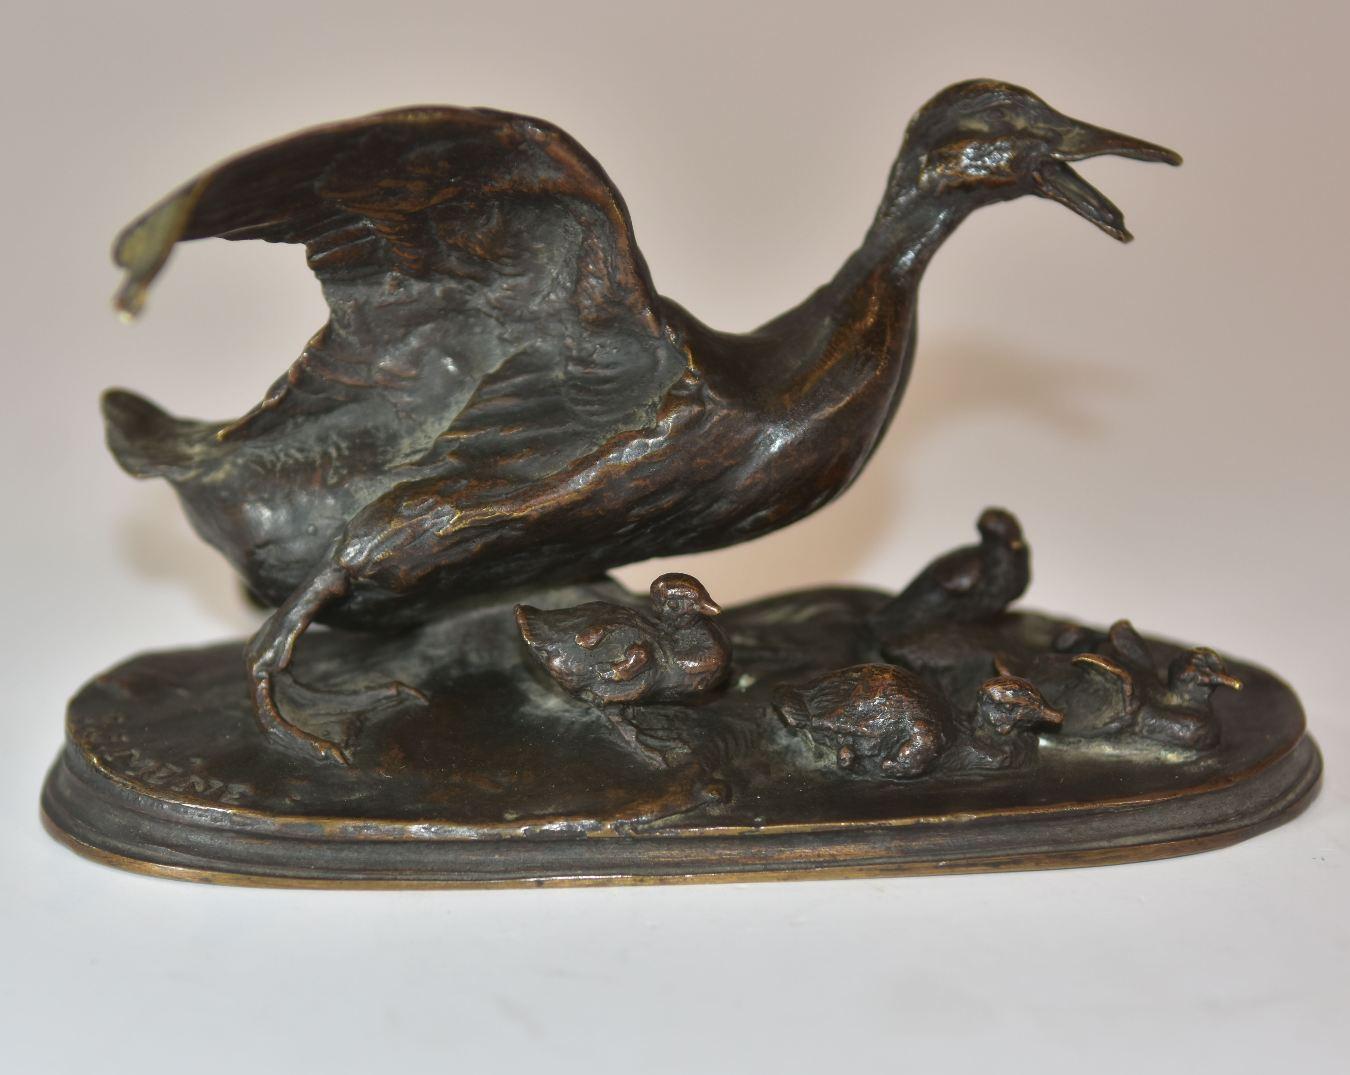 canne du 19ème siècle avec ses 6 canetons en bronze animalier par P.J Mêne. Patine brune. Numéro 33 sur la terrasse.